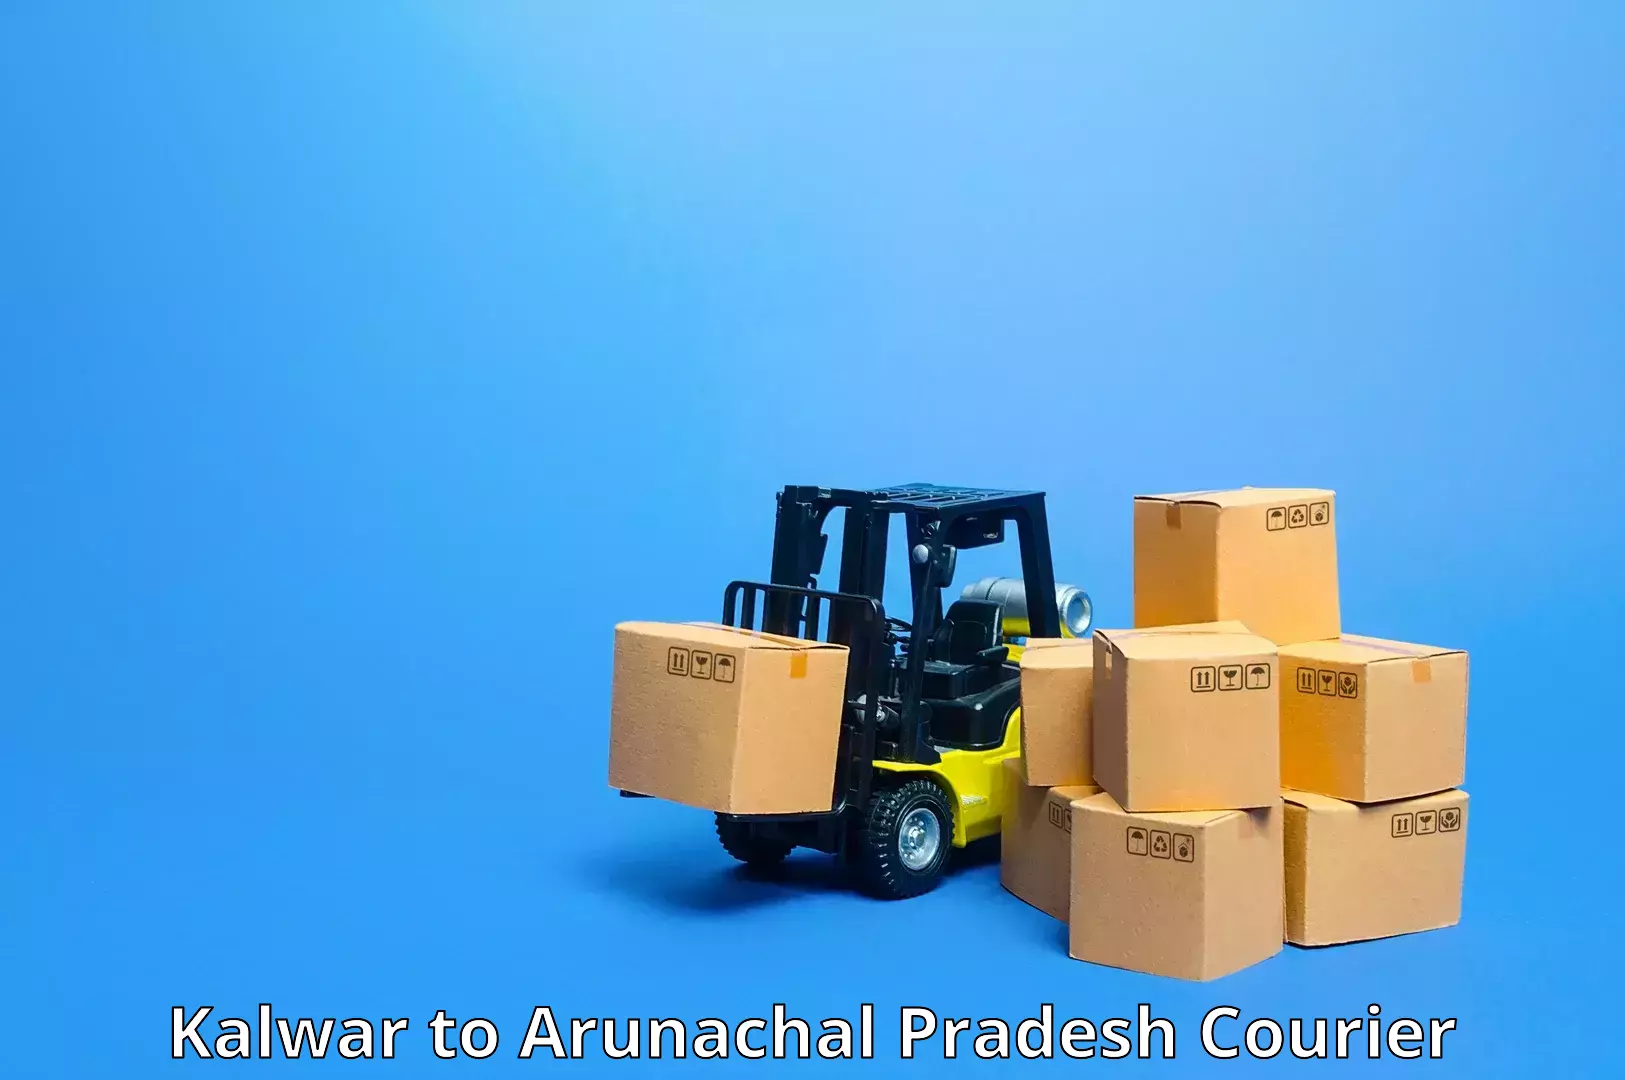 Secure package delivery Kalwar to Arunachal Pradesh